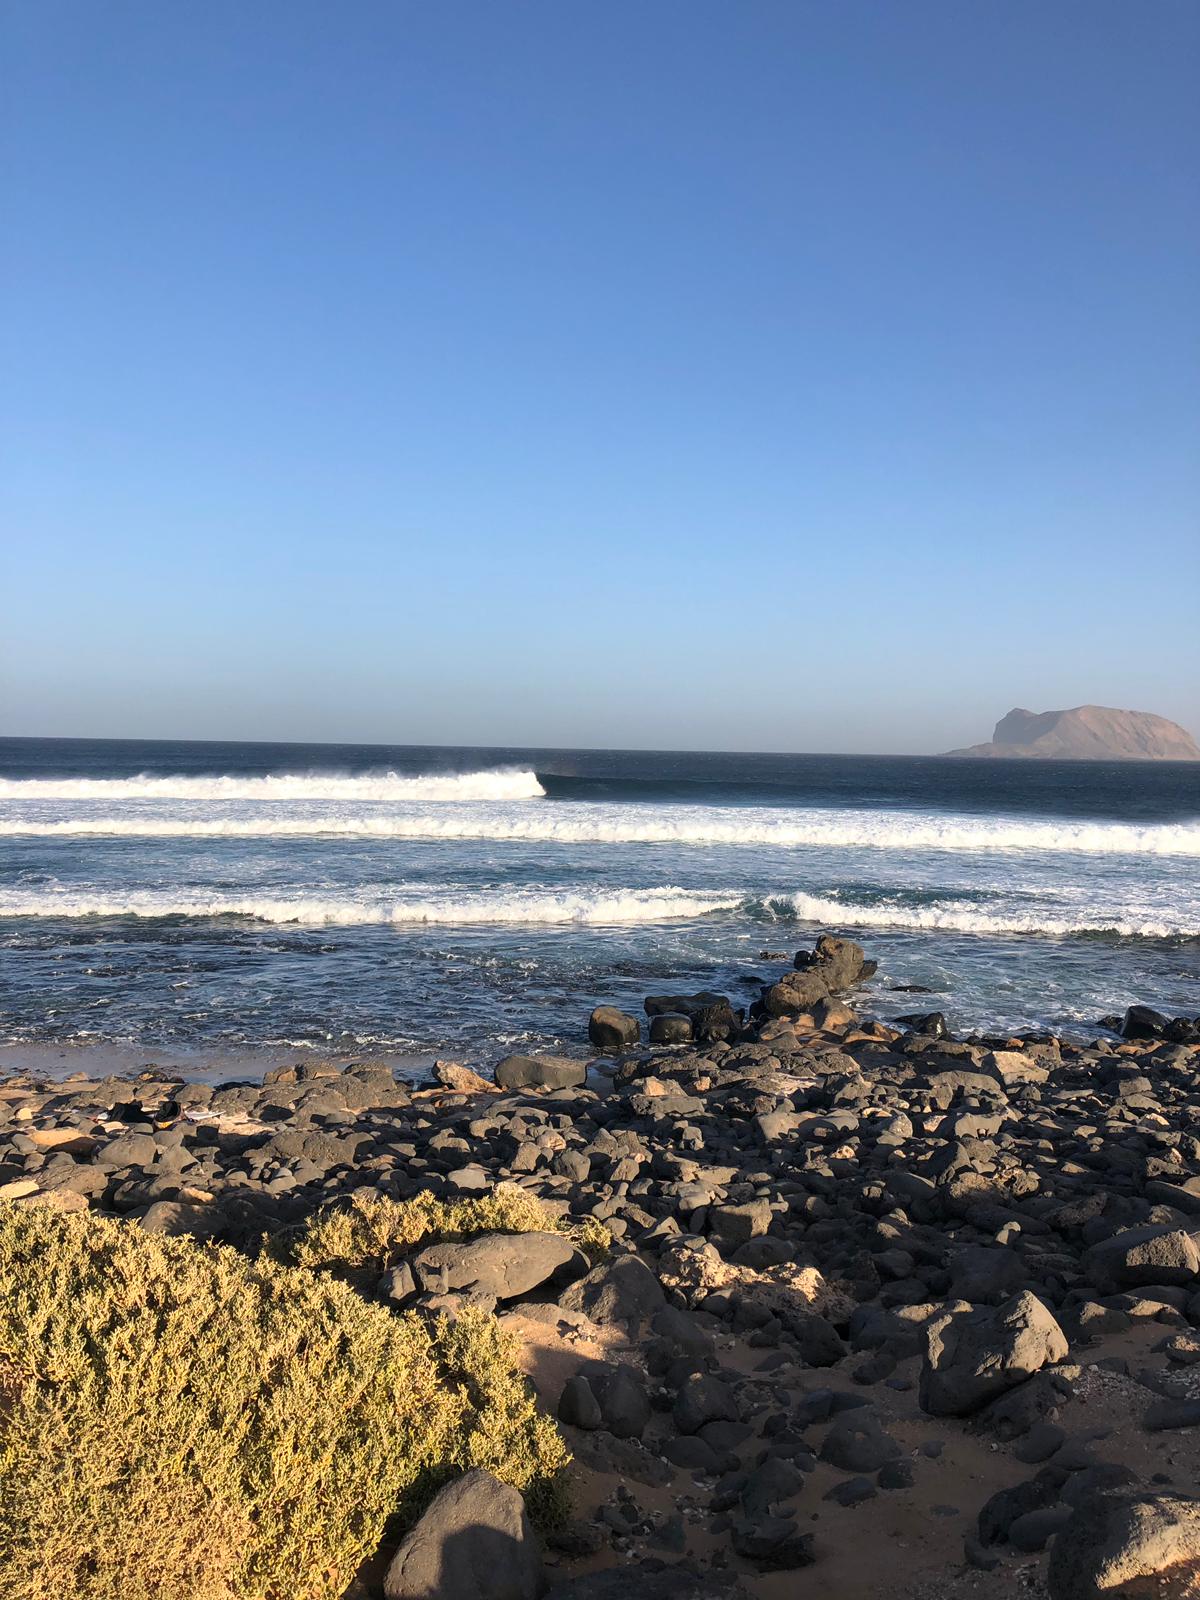 Hoy @p3ib Pablo del @frussurf tean se ha acercado a la ola del Corral en La isla de la Graciosa de Lanzarote. El baño está muy complicado porque hace muchísimo viento de unos 70/80 km/h. La altura de las olas para hacernos una idea es de 1.5 m. "Canarios" y está muy potente, esta ola se surfea a marea vacía pero ahora hay un poco de agua y no salen tubos. 